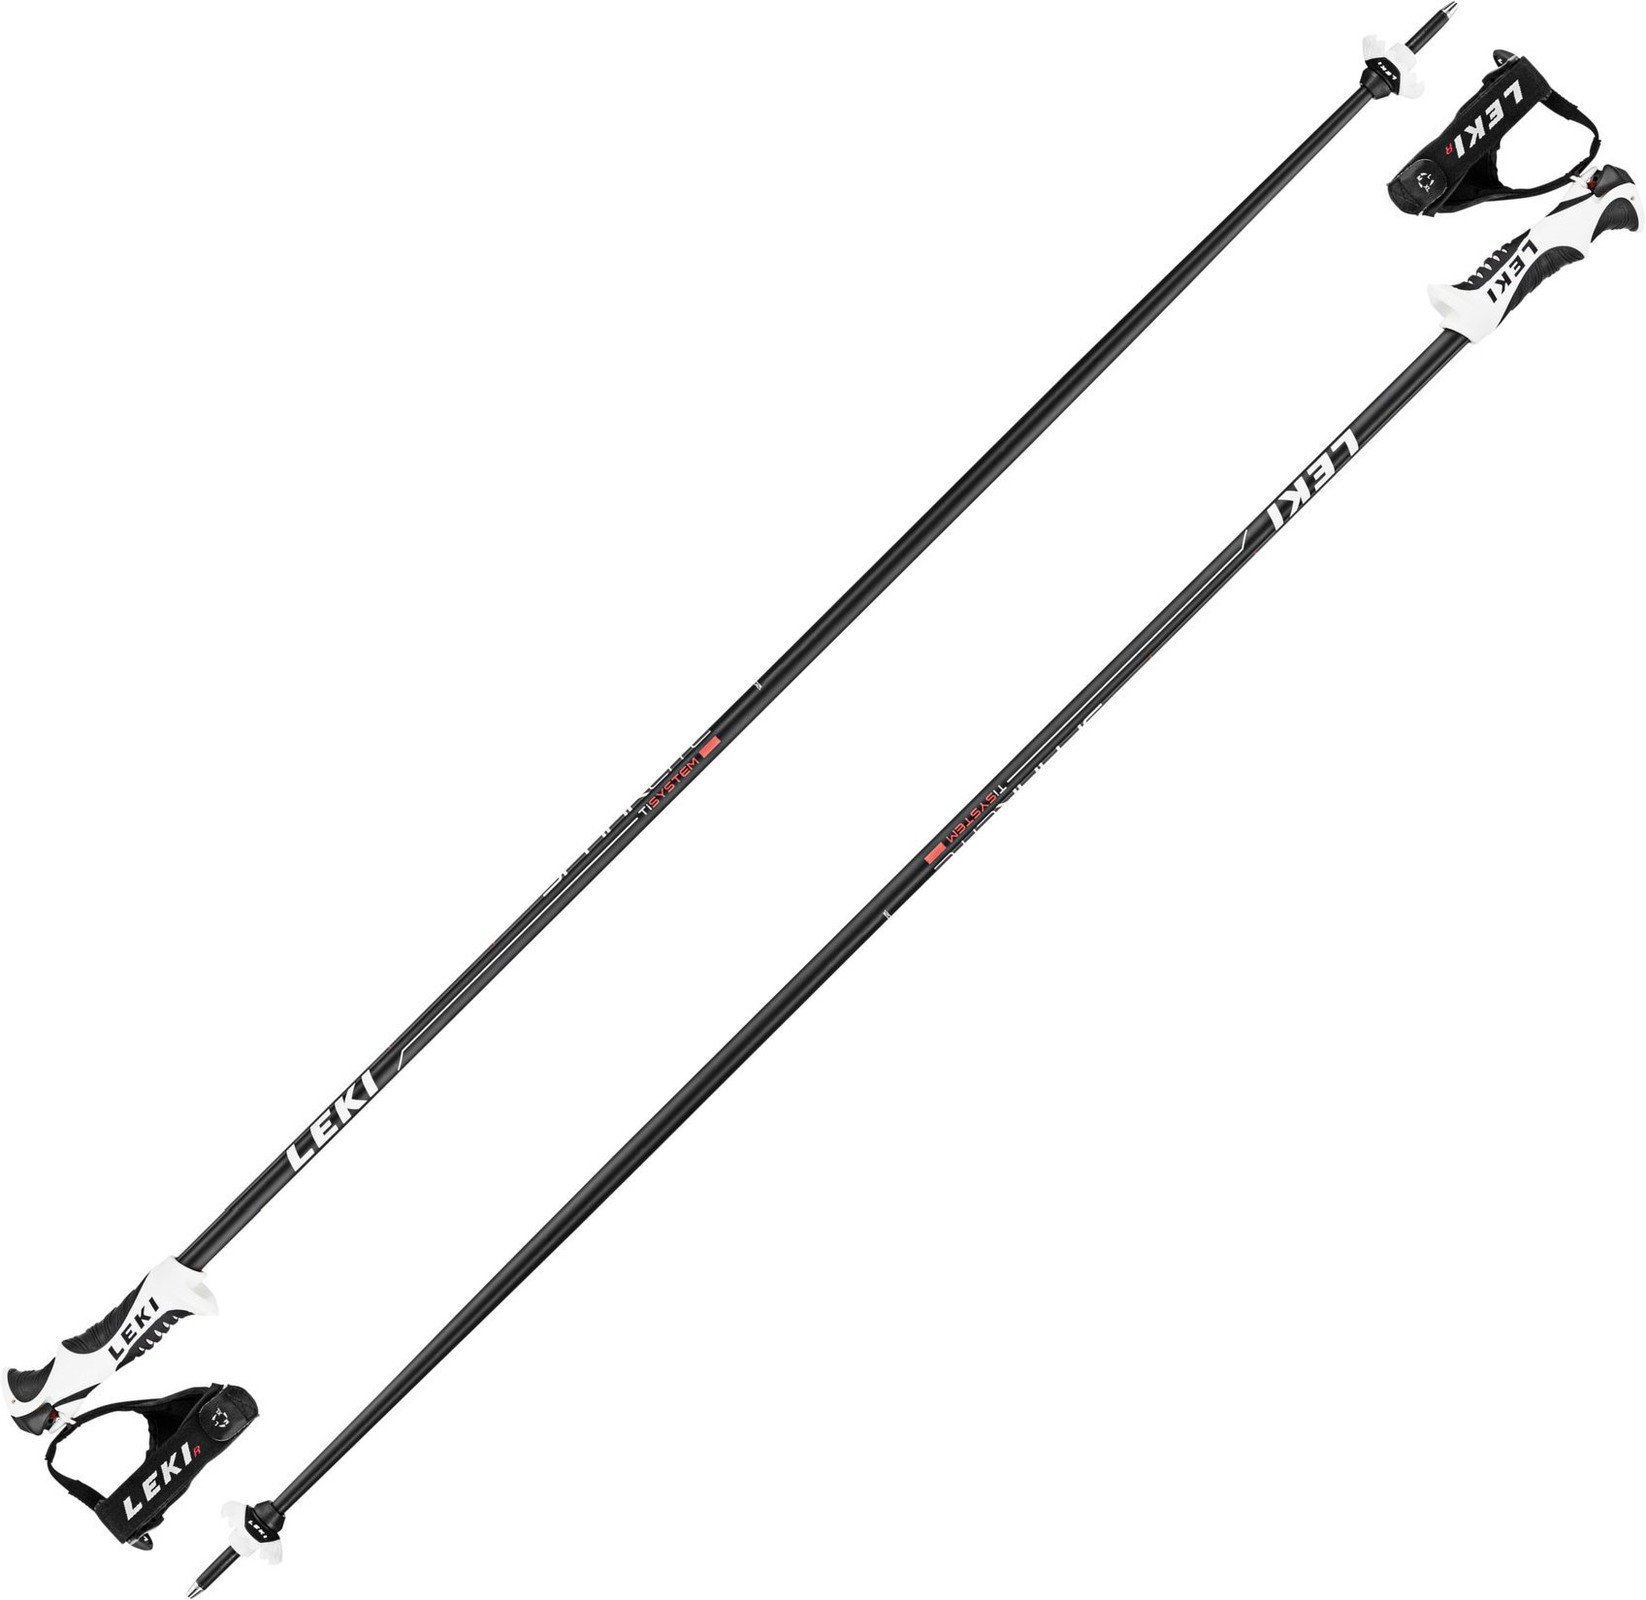 Ski Poles Leki Spark Lite S Black/Light-Anthracite-White-Neonred 115 17/18